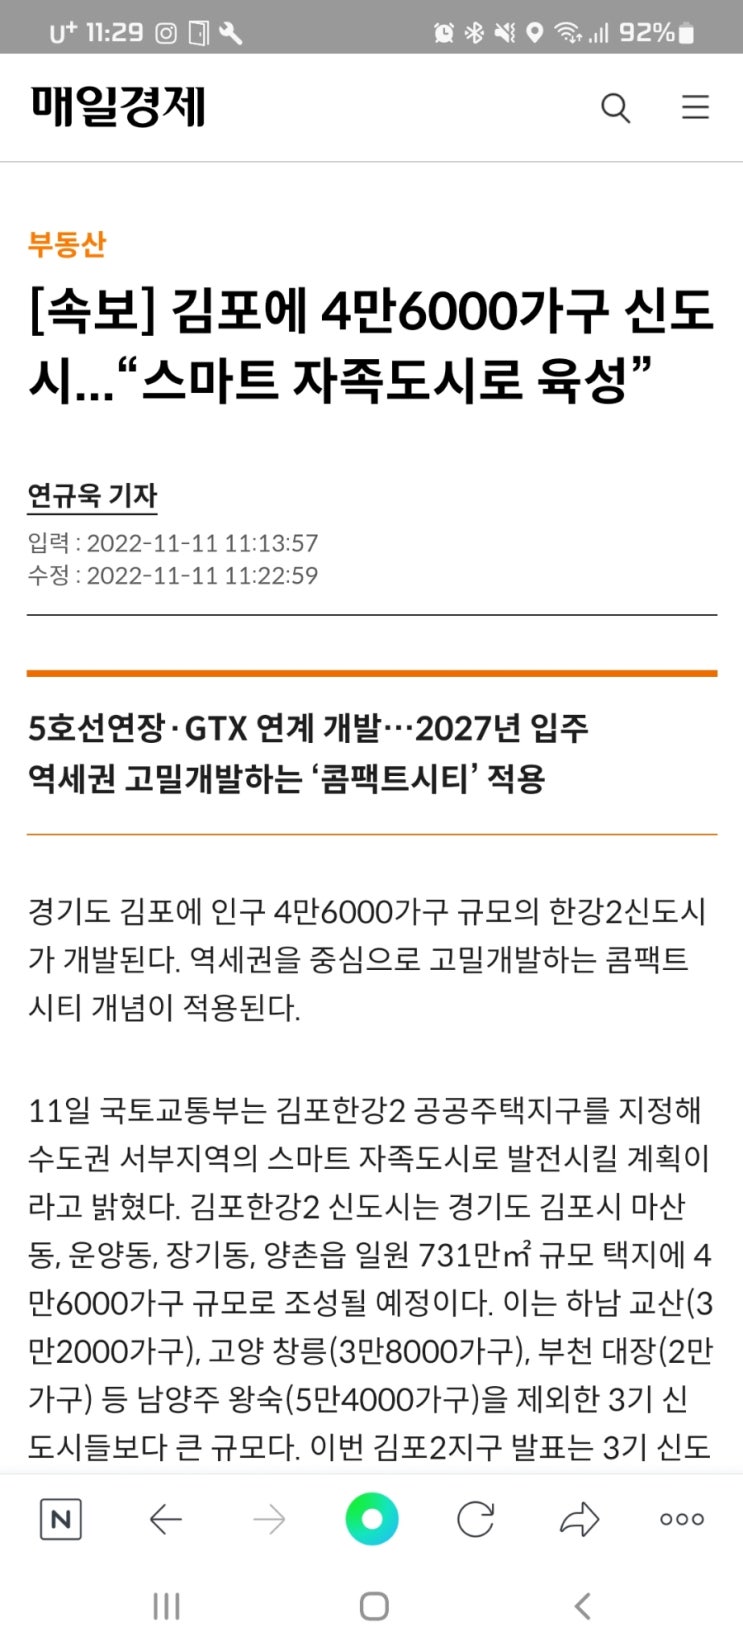 [속보] 김포에 4만6000가구 신도시...“스마트 자족도시로 육성”